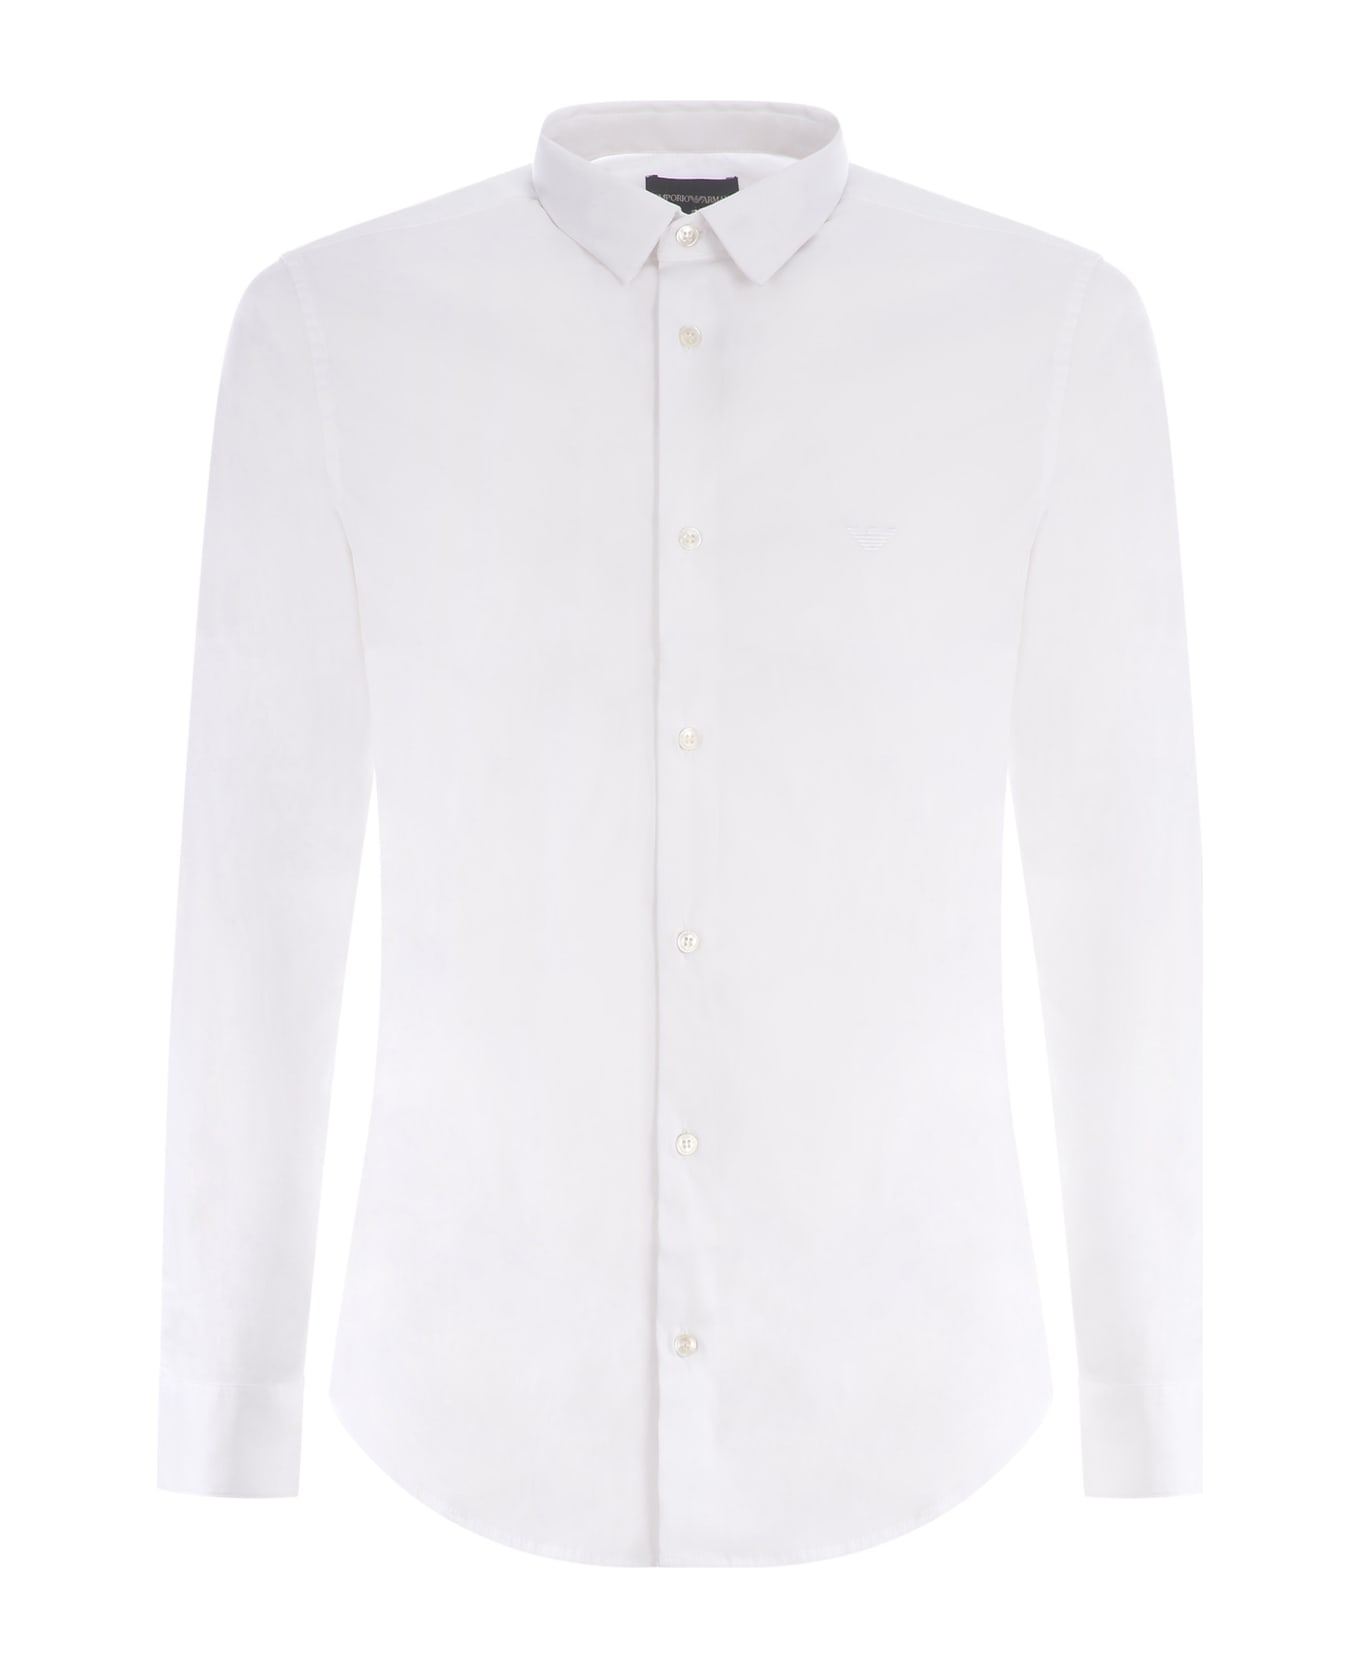 Emporio Armani Shirt Emporio Armani In Stretch Cotton Available Store Pompei - Bianco